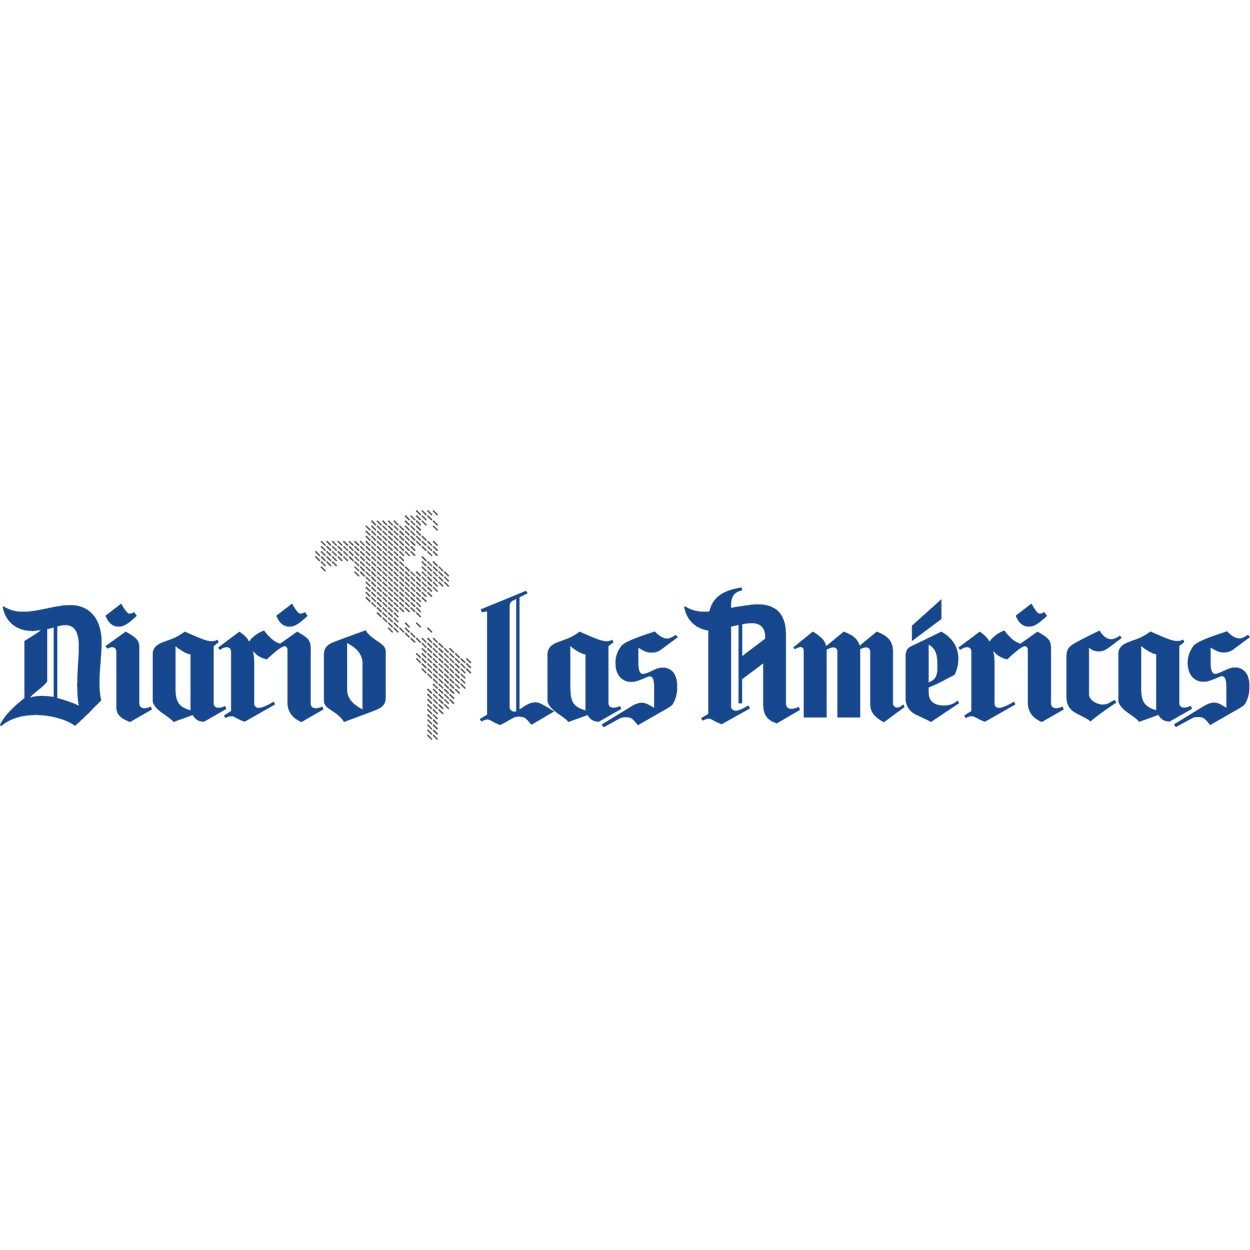 Diario Las Americas logo